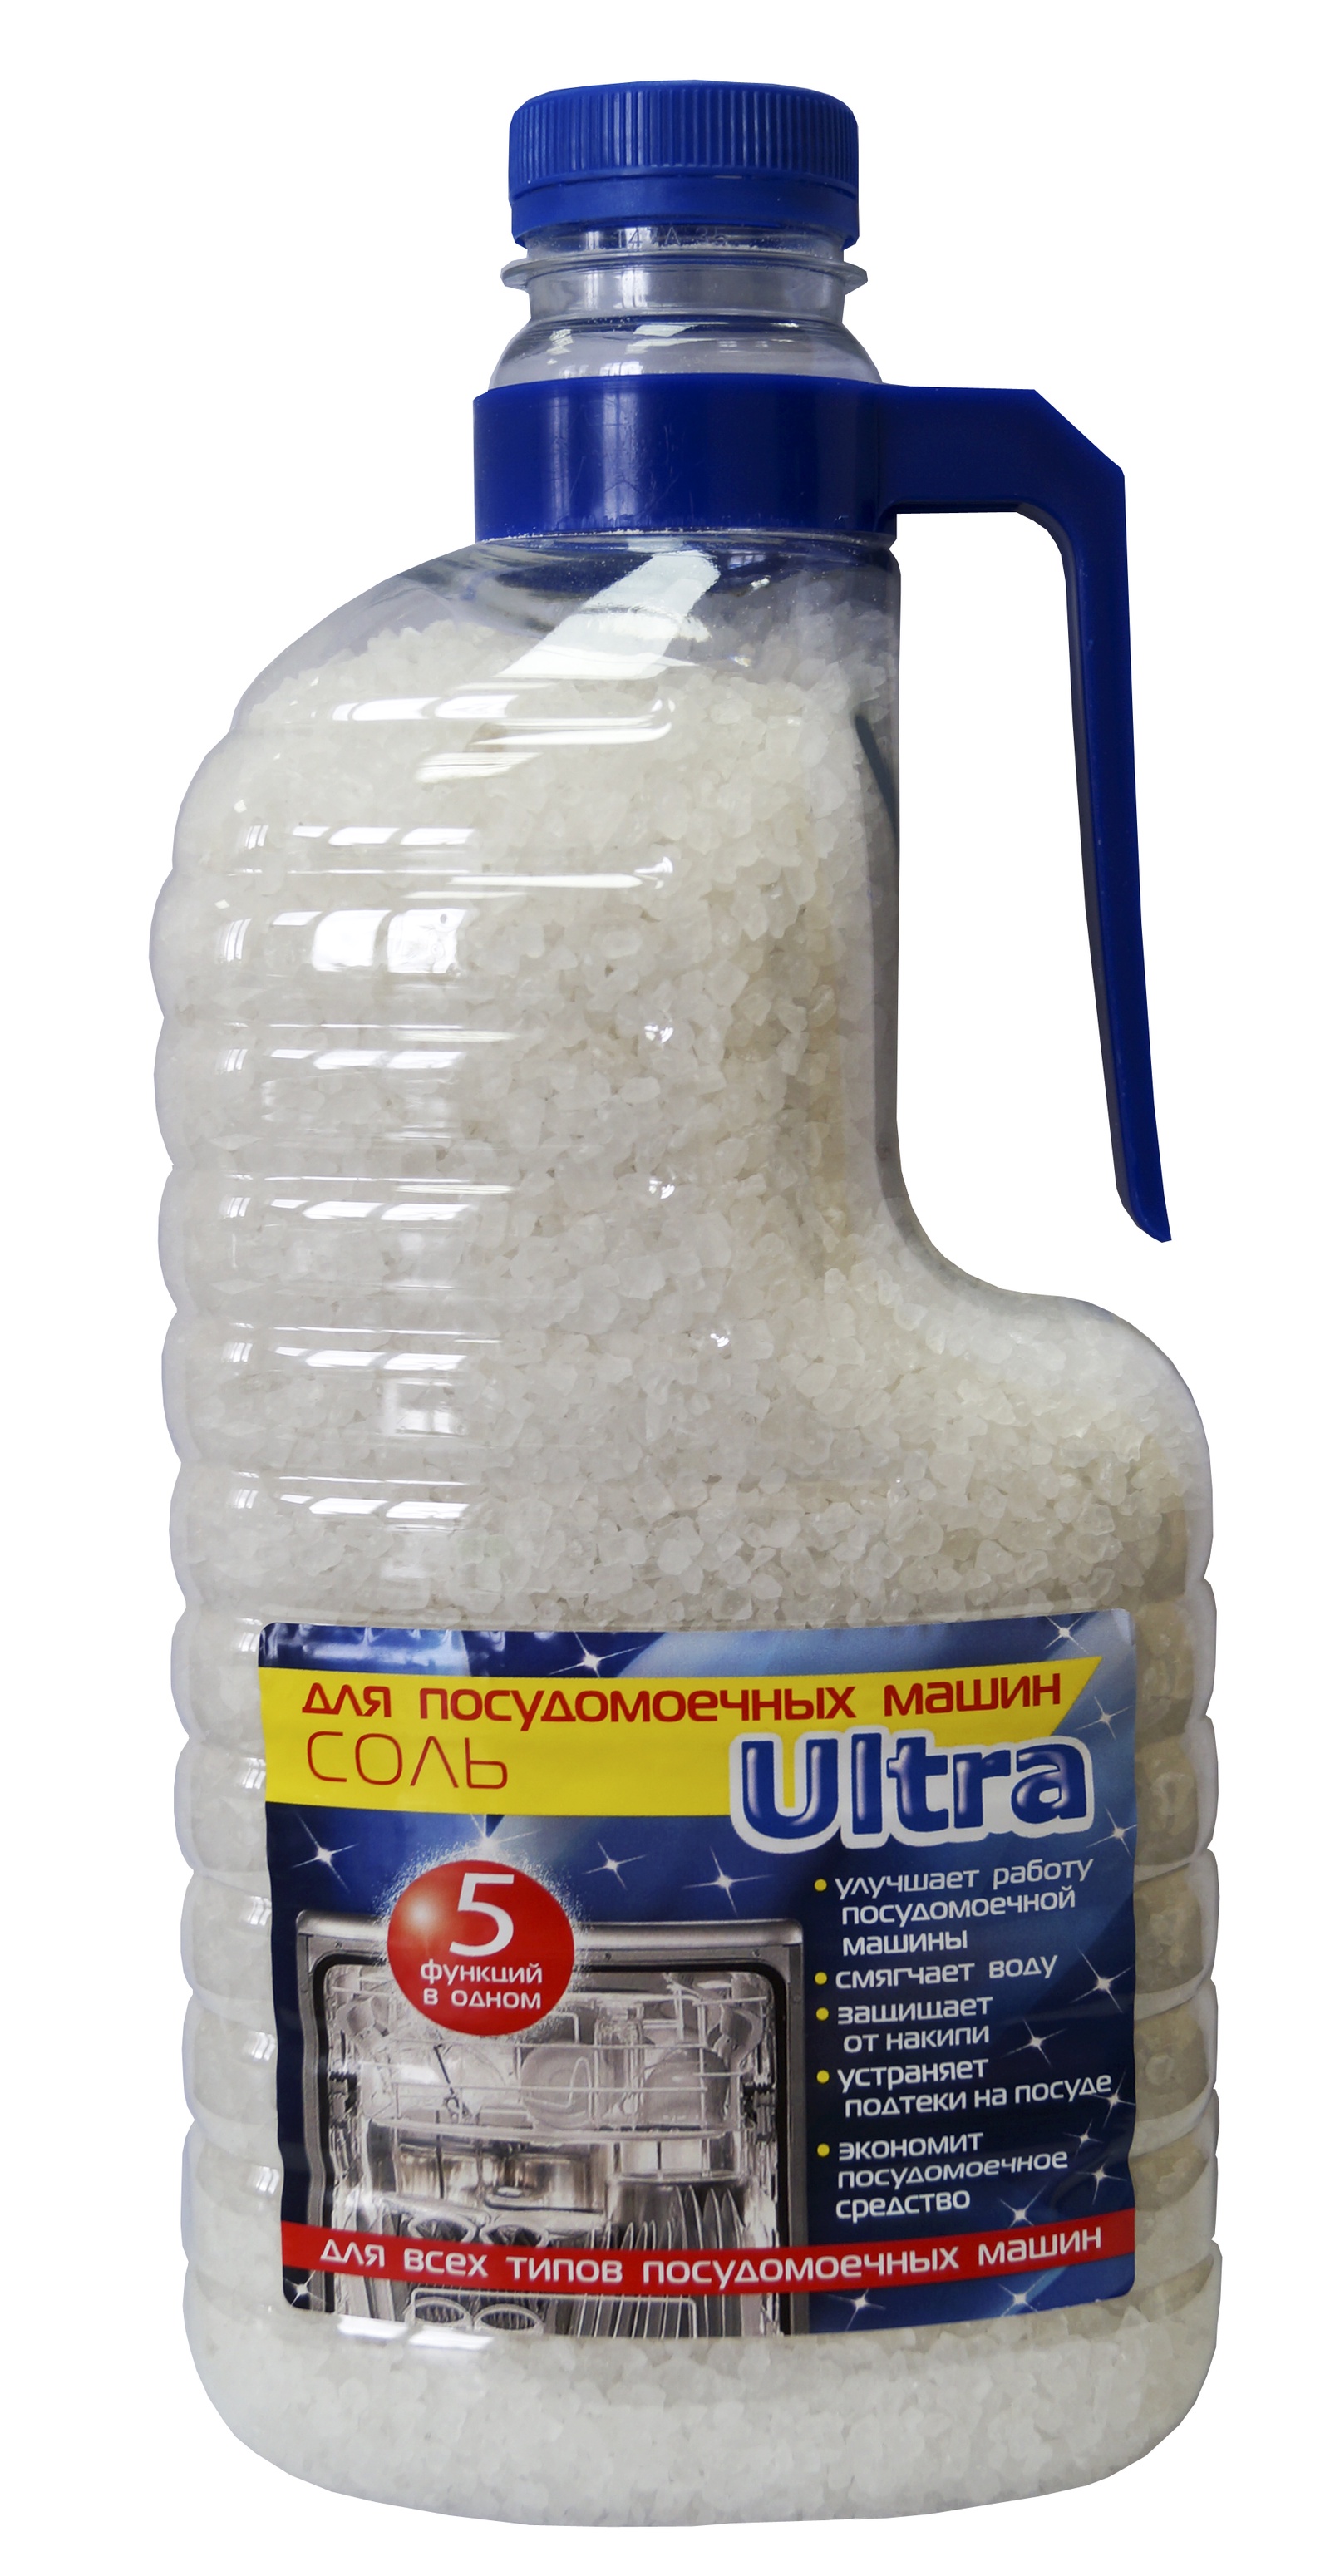 Средство для мытья посуды УЛЬТРА-ЭКСТРА Соль для посудомоечных машин 2,5 кг., 2,5